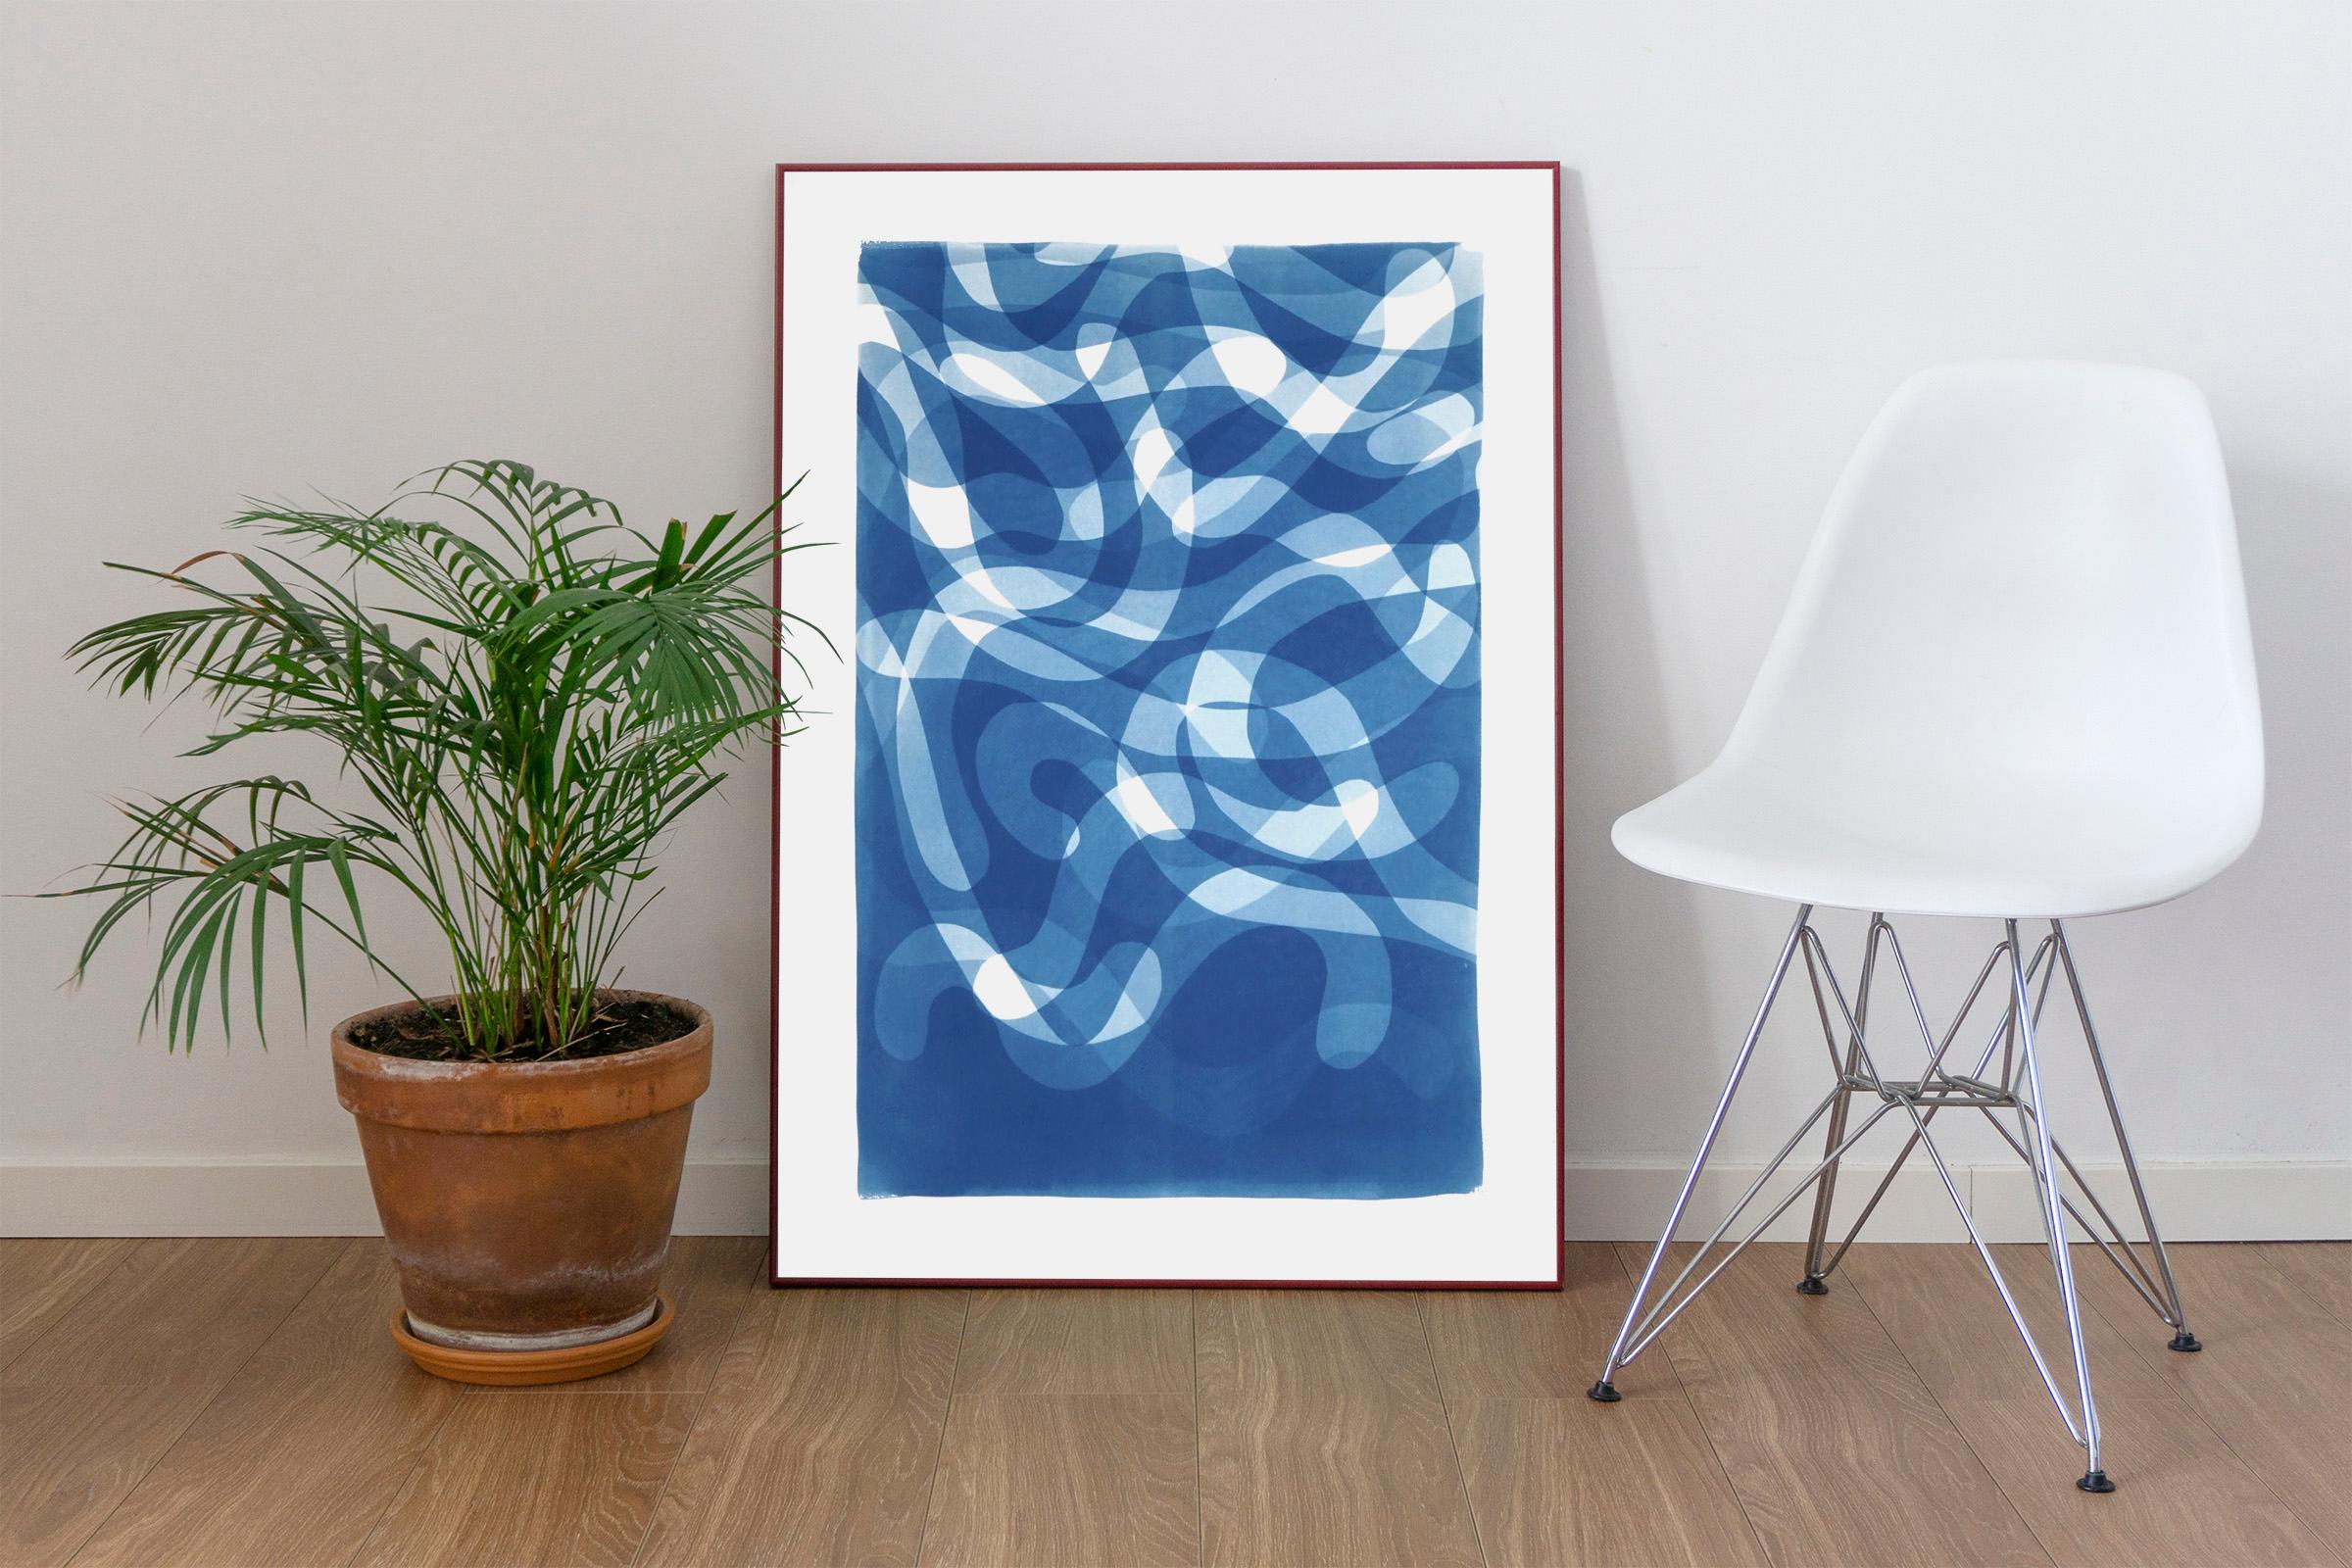 Des tourbillons tombés, couches courbes organiques dans les tons bleus, cyanotype sur papier fait à la main - Photograph de Kind of Cyan